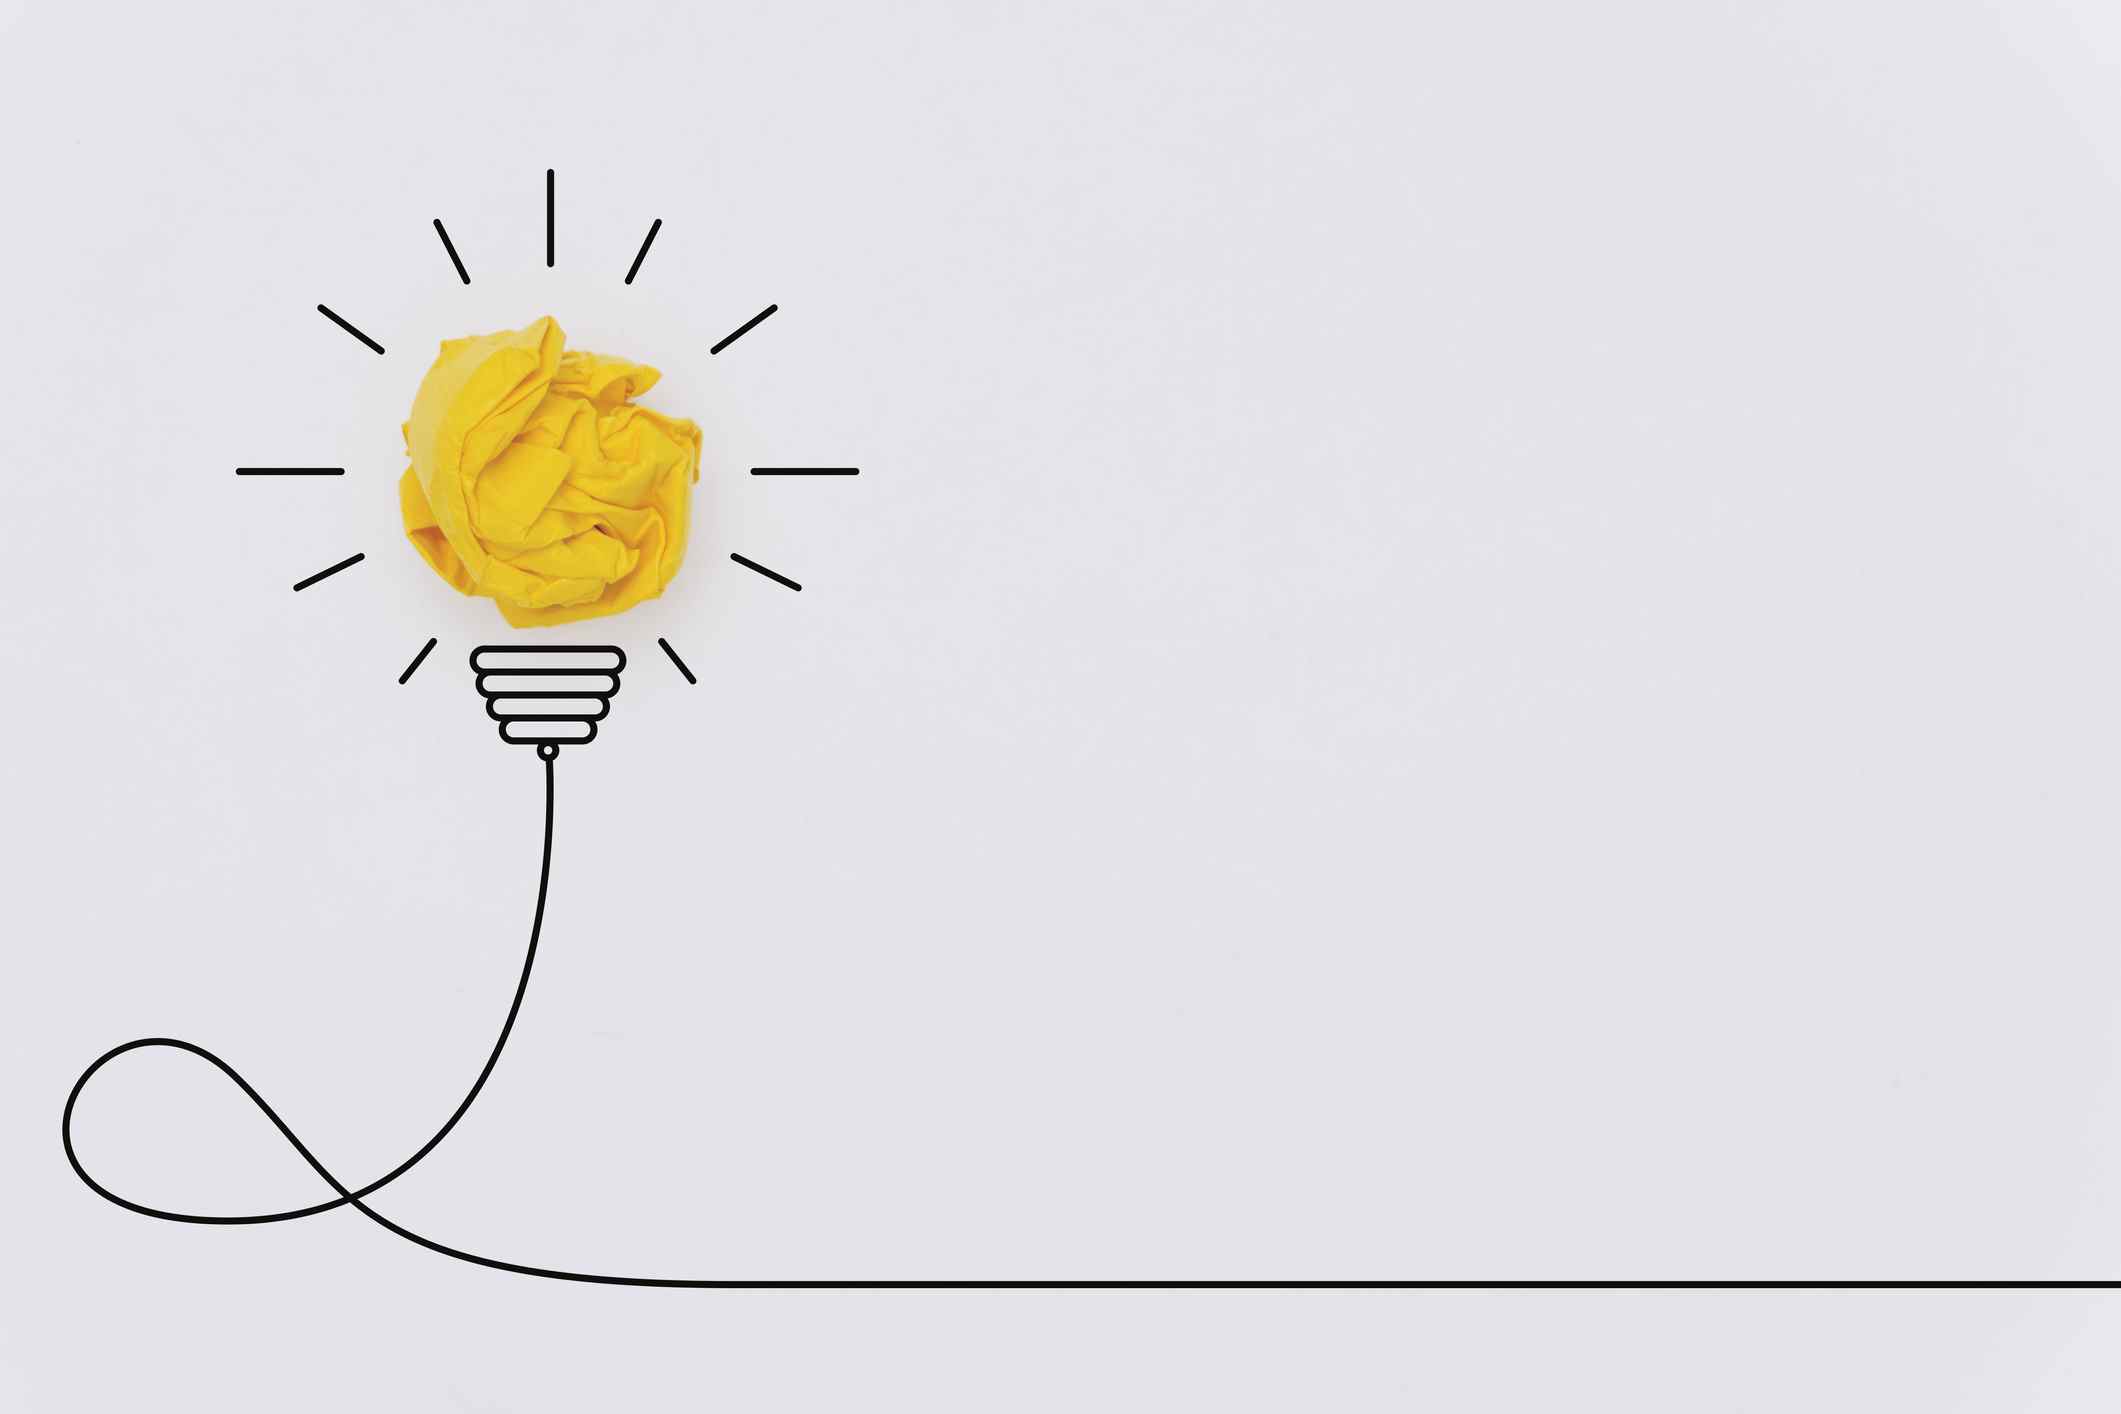 Dessin d'ampoule fabriqué à partir de boule de papier froissé jaune;  conseils de présentation aux investisseurs